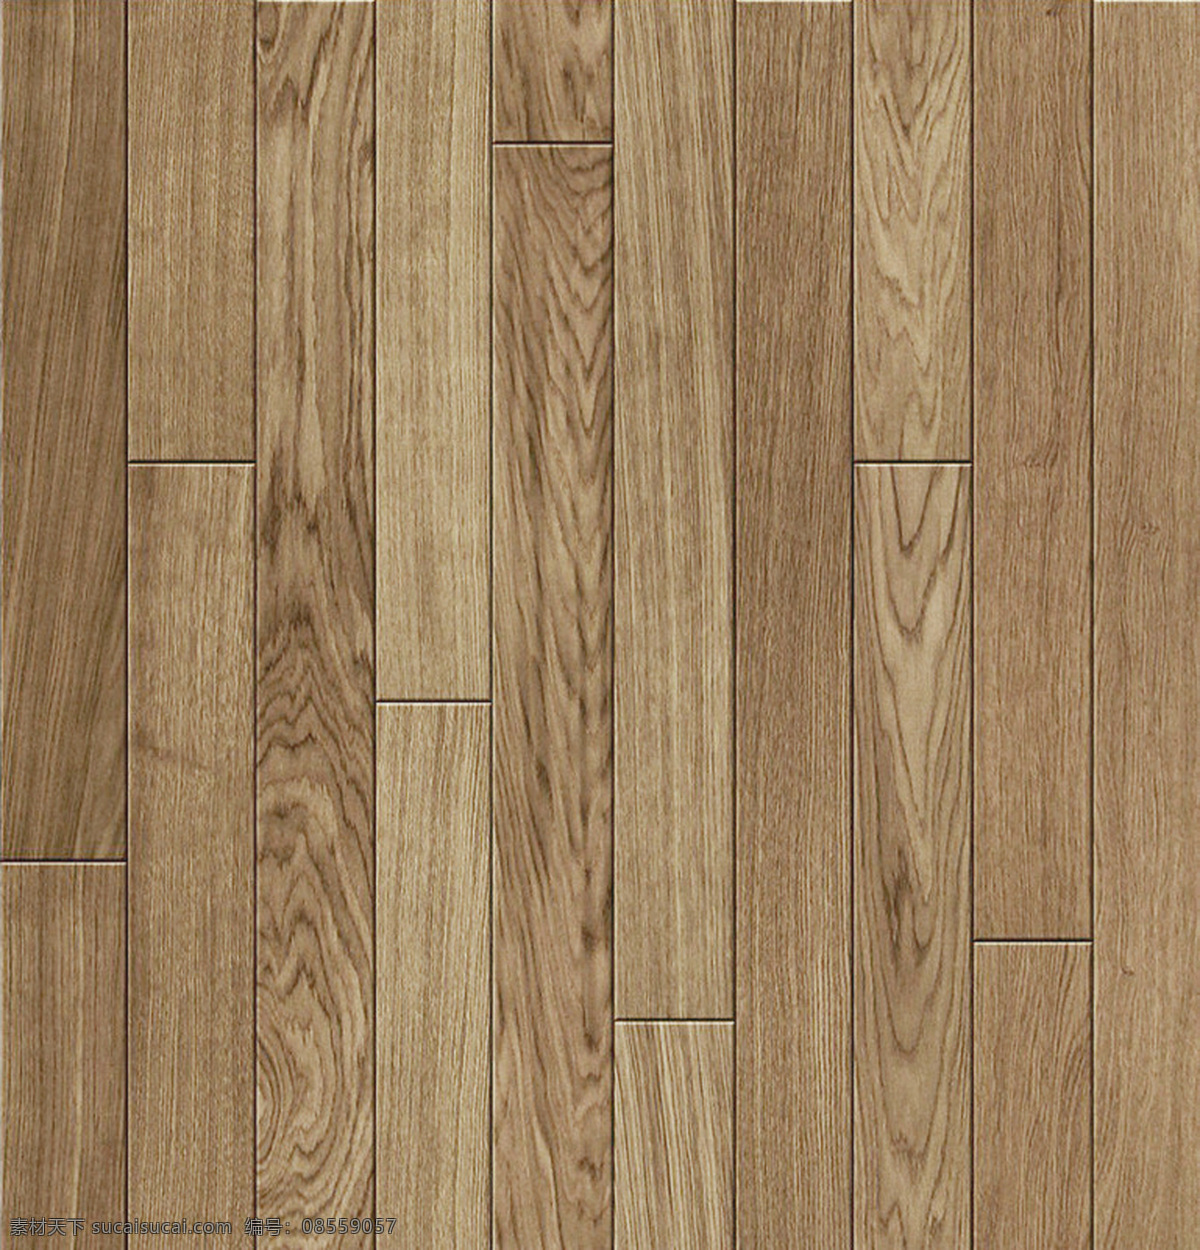 木地板 贴图 木地板贴图 木地板图 木纹 木地纹理 强化木地板 生活百科 生活素材